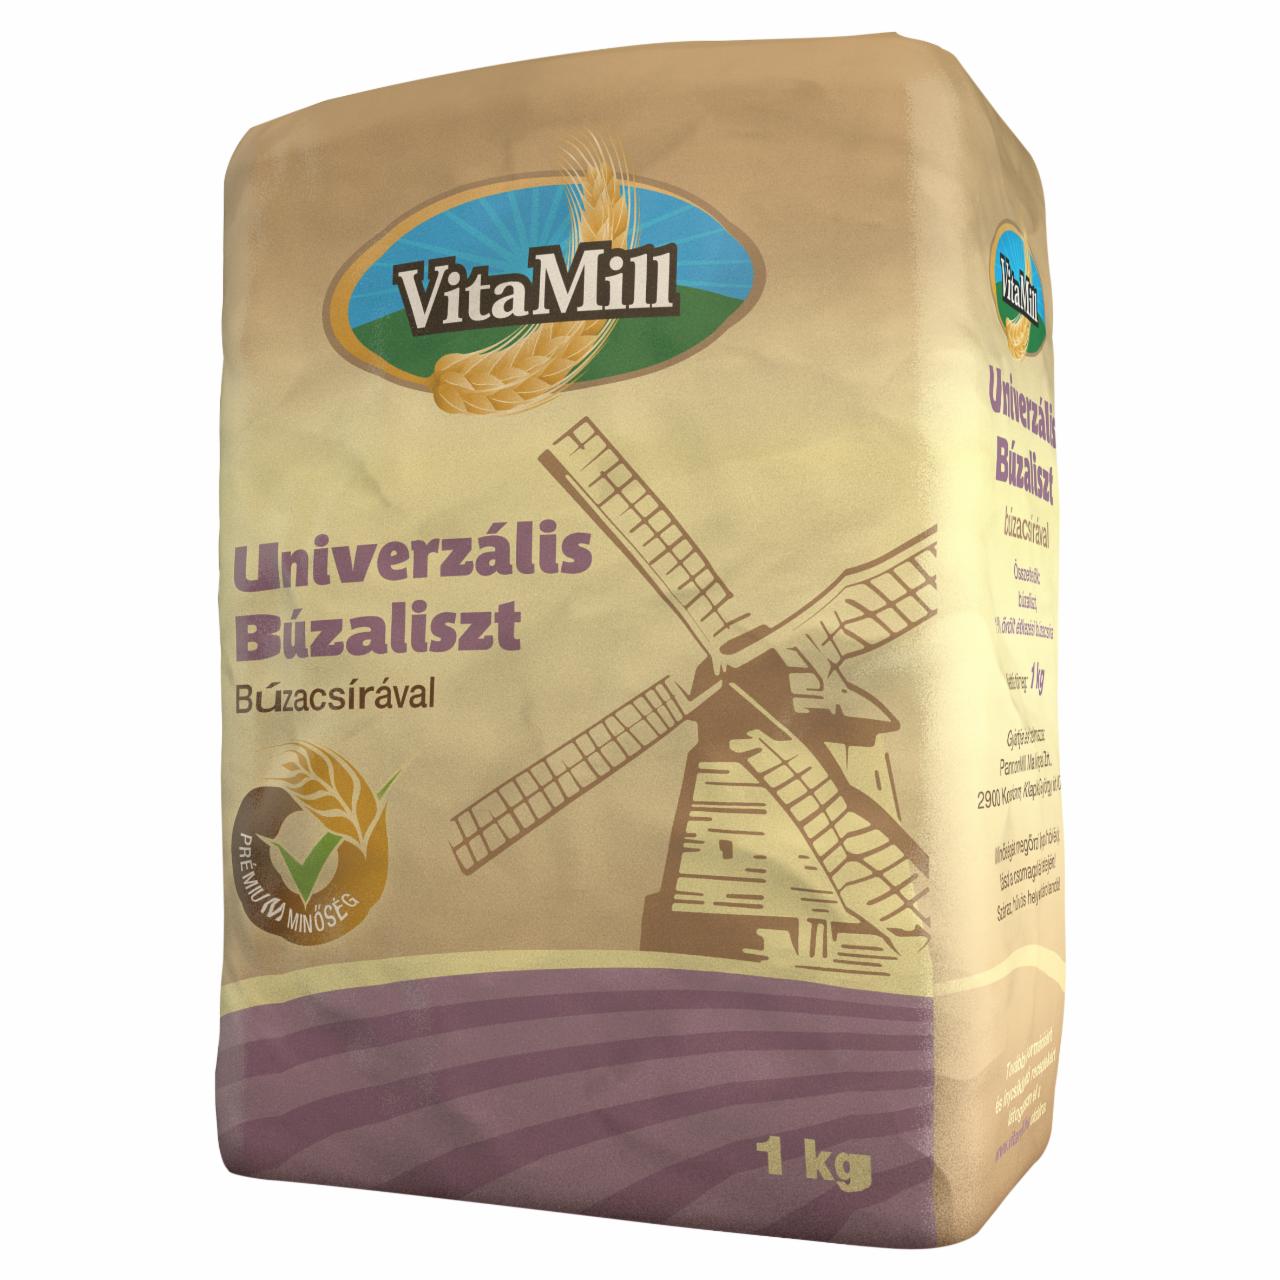 Képek - VitaMill univerzális búzaliszt búzacsírával 1 kg